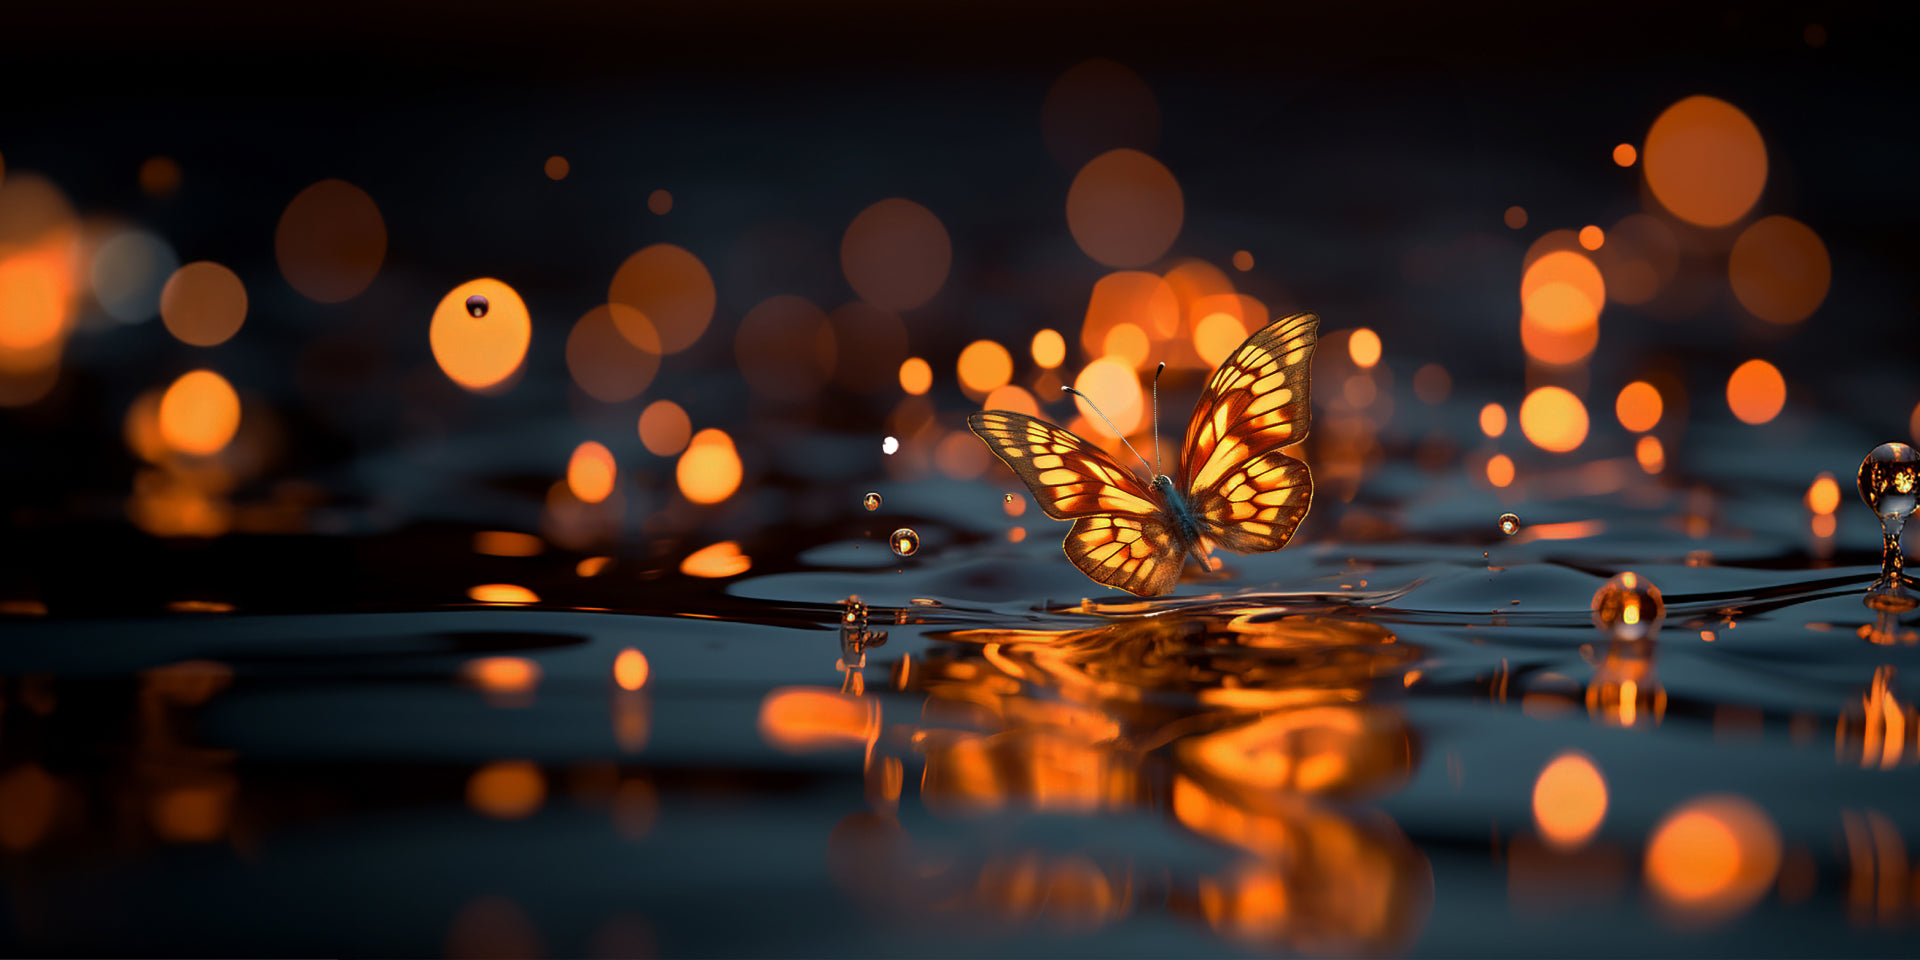 Schmetterling in der Nähe eines Gewässers. Reflektionen und warme Lichter und Farben. Idyllische Fotografie.